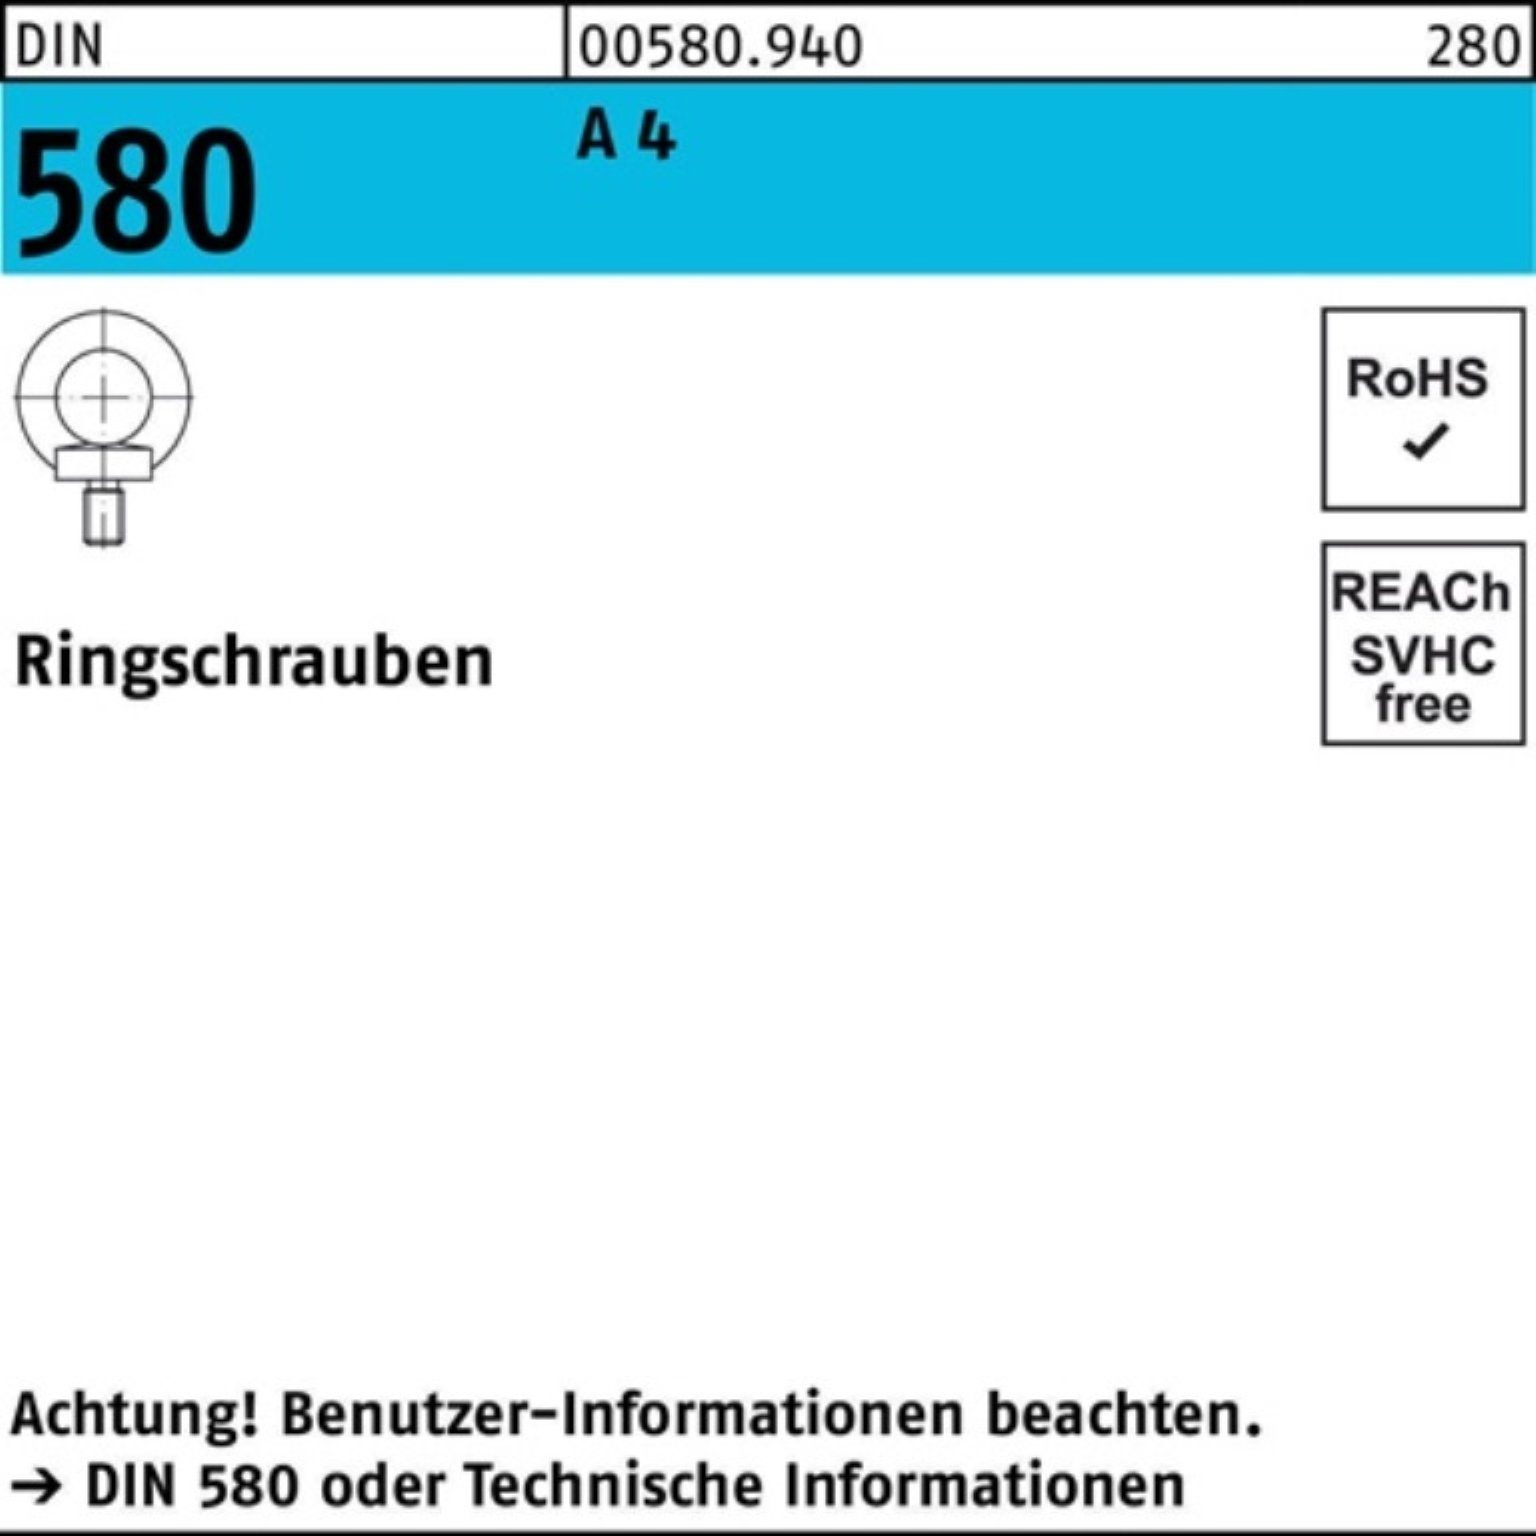 Reyher Schraube 100er Pack Ringschraube 1 Stück 4 DIN 580 4 580 A DIN A M20 Ringschra